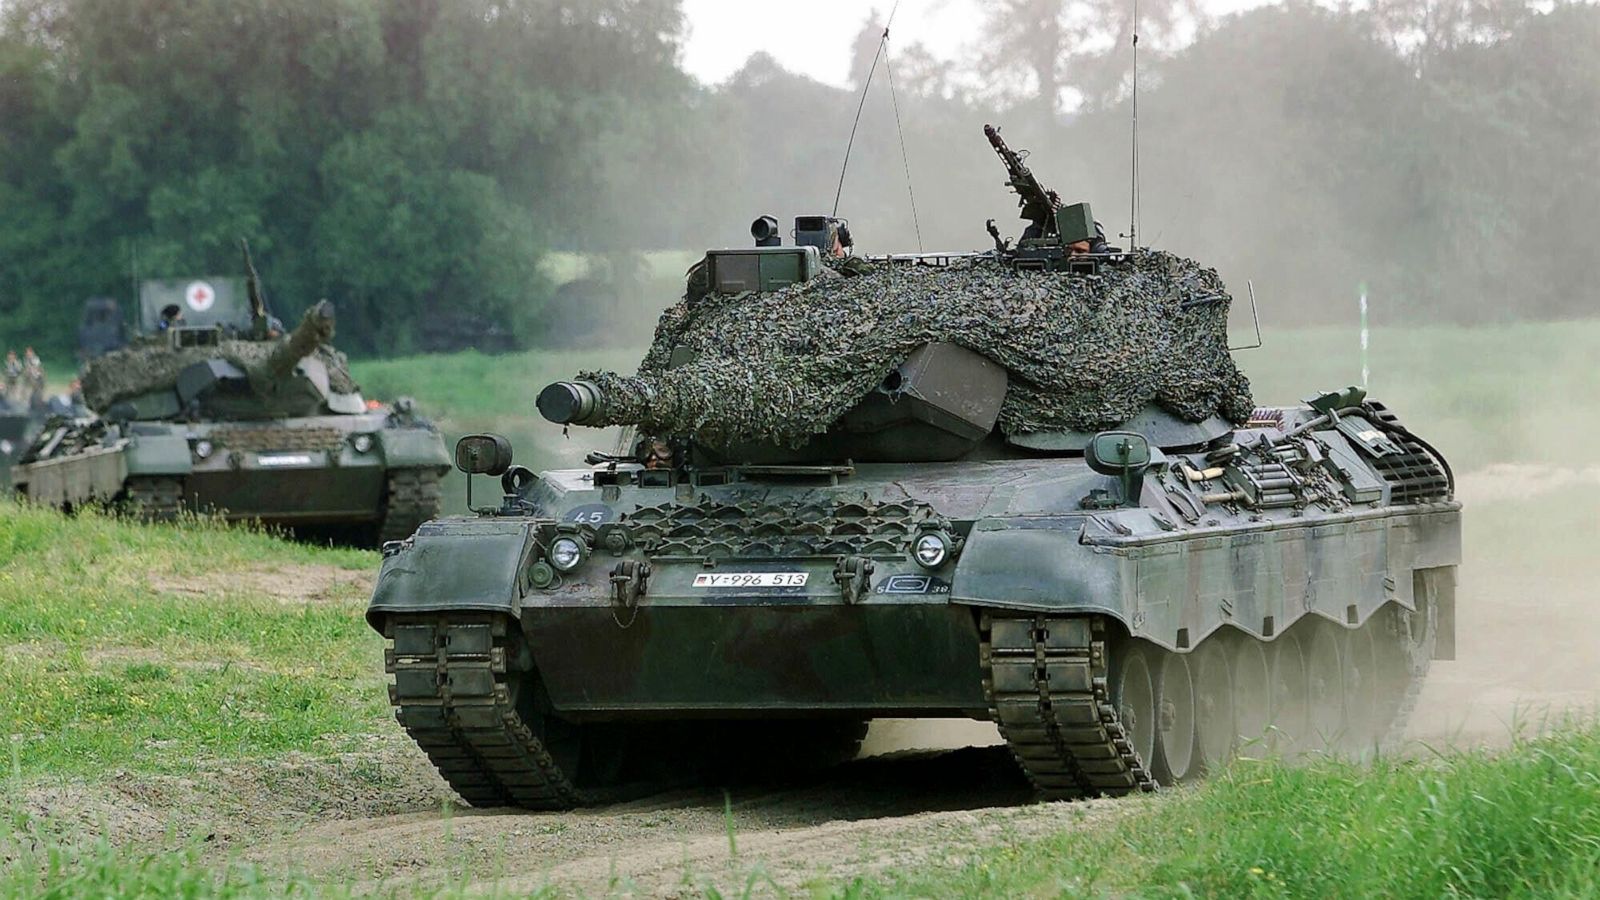 Γερμανός αντικαγκελάριος Ρ.Χάμπεκ: «Η απόφαση για την αποστολή Leopard στην Ουκρανία ήρθε κάπως αργά»